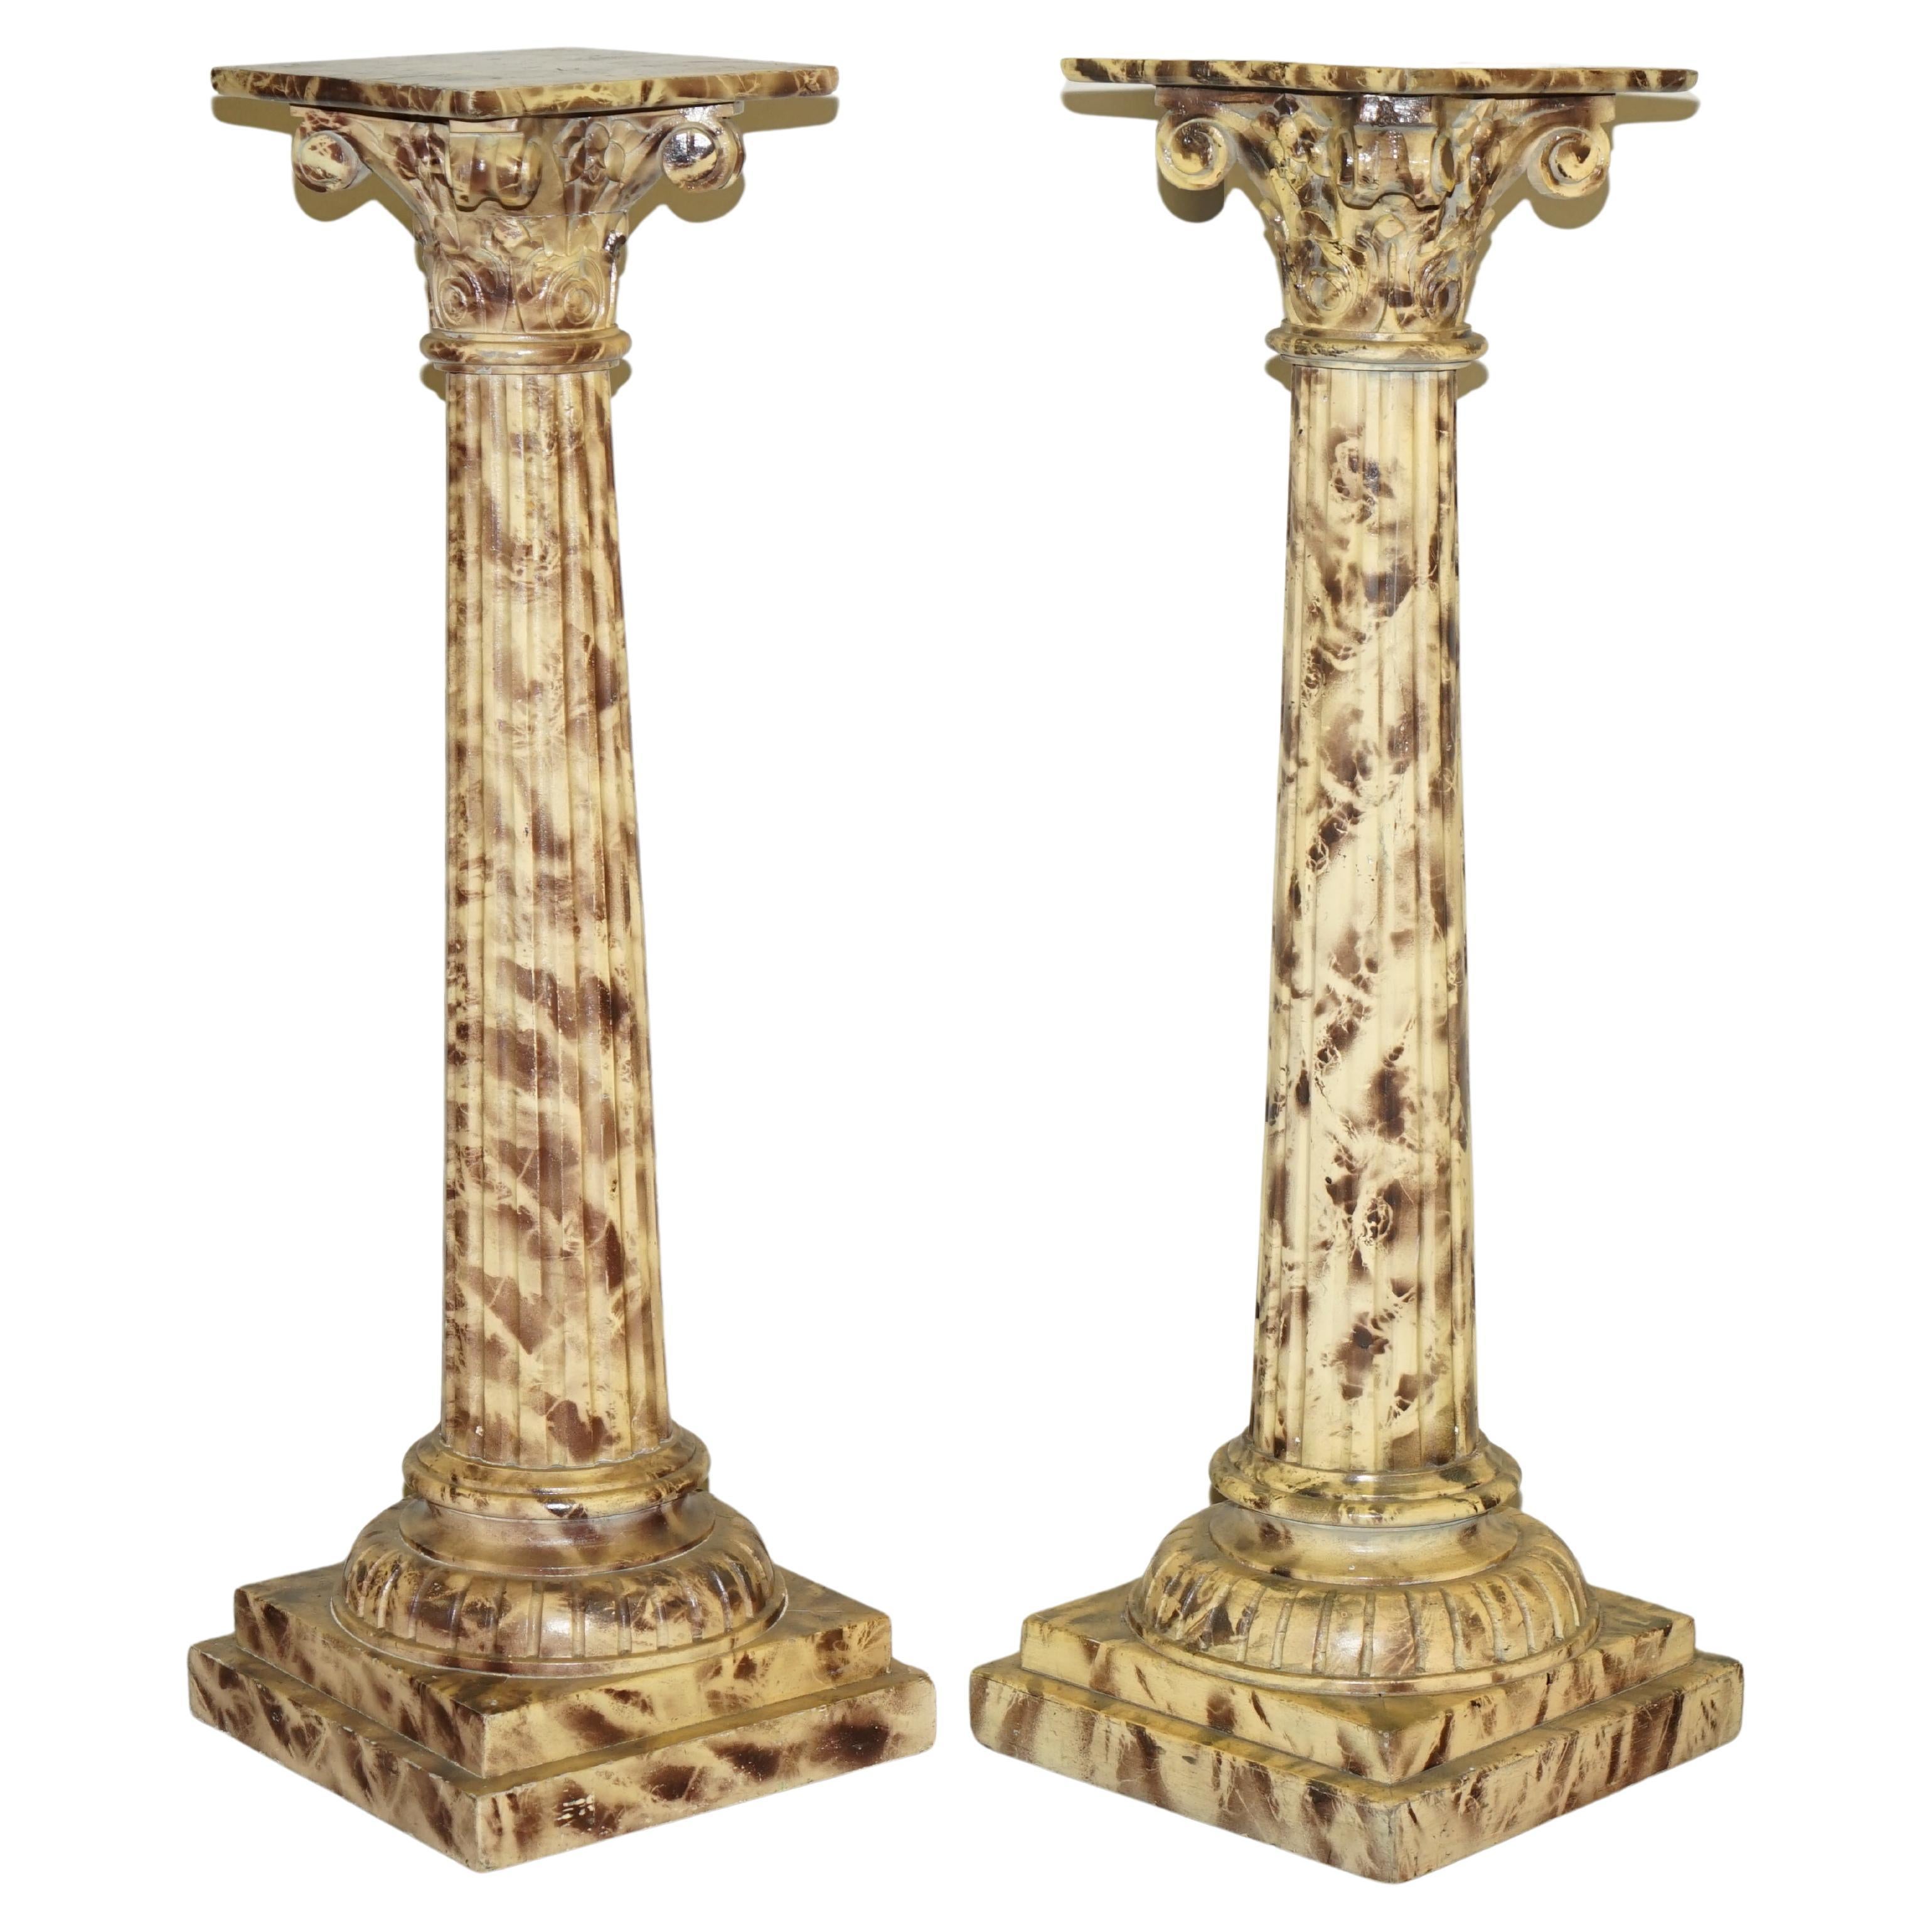 Paar antike handgeschnitzte korinthische Säule Pedestal steht Faux Marmor Farbe